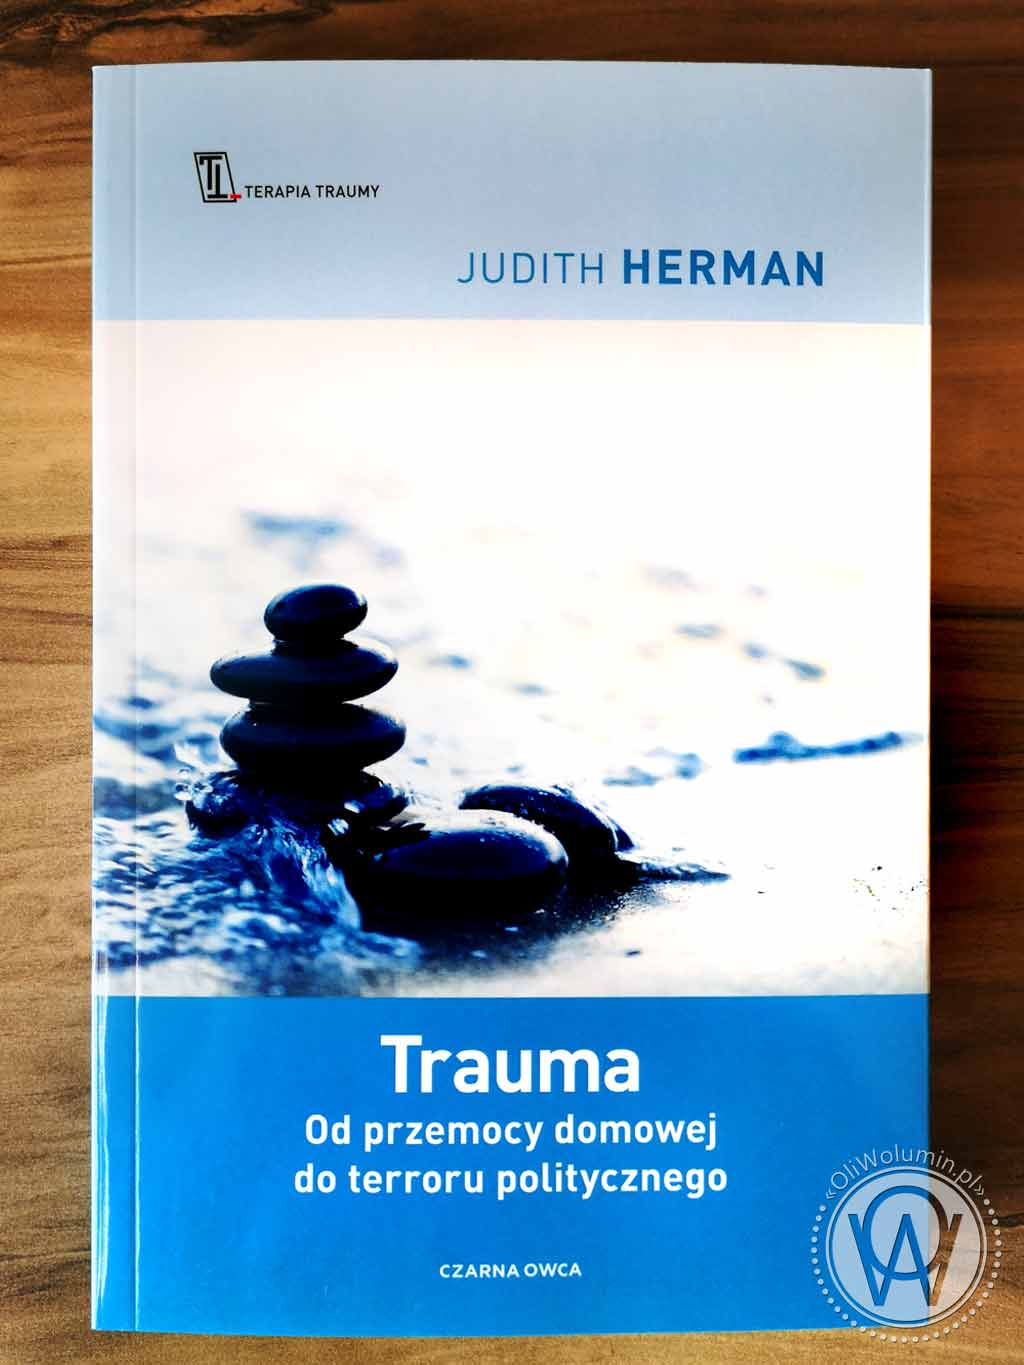 Judith Herman "Trauma. Od przemocy domowej do terroru politycznego"